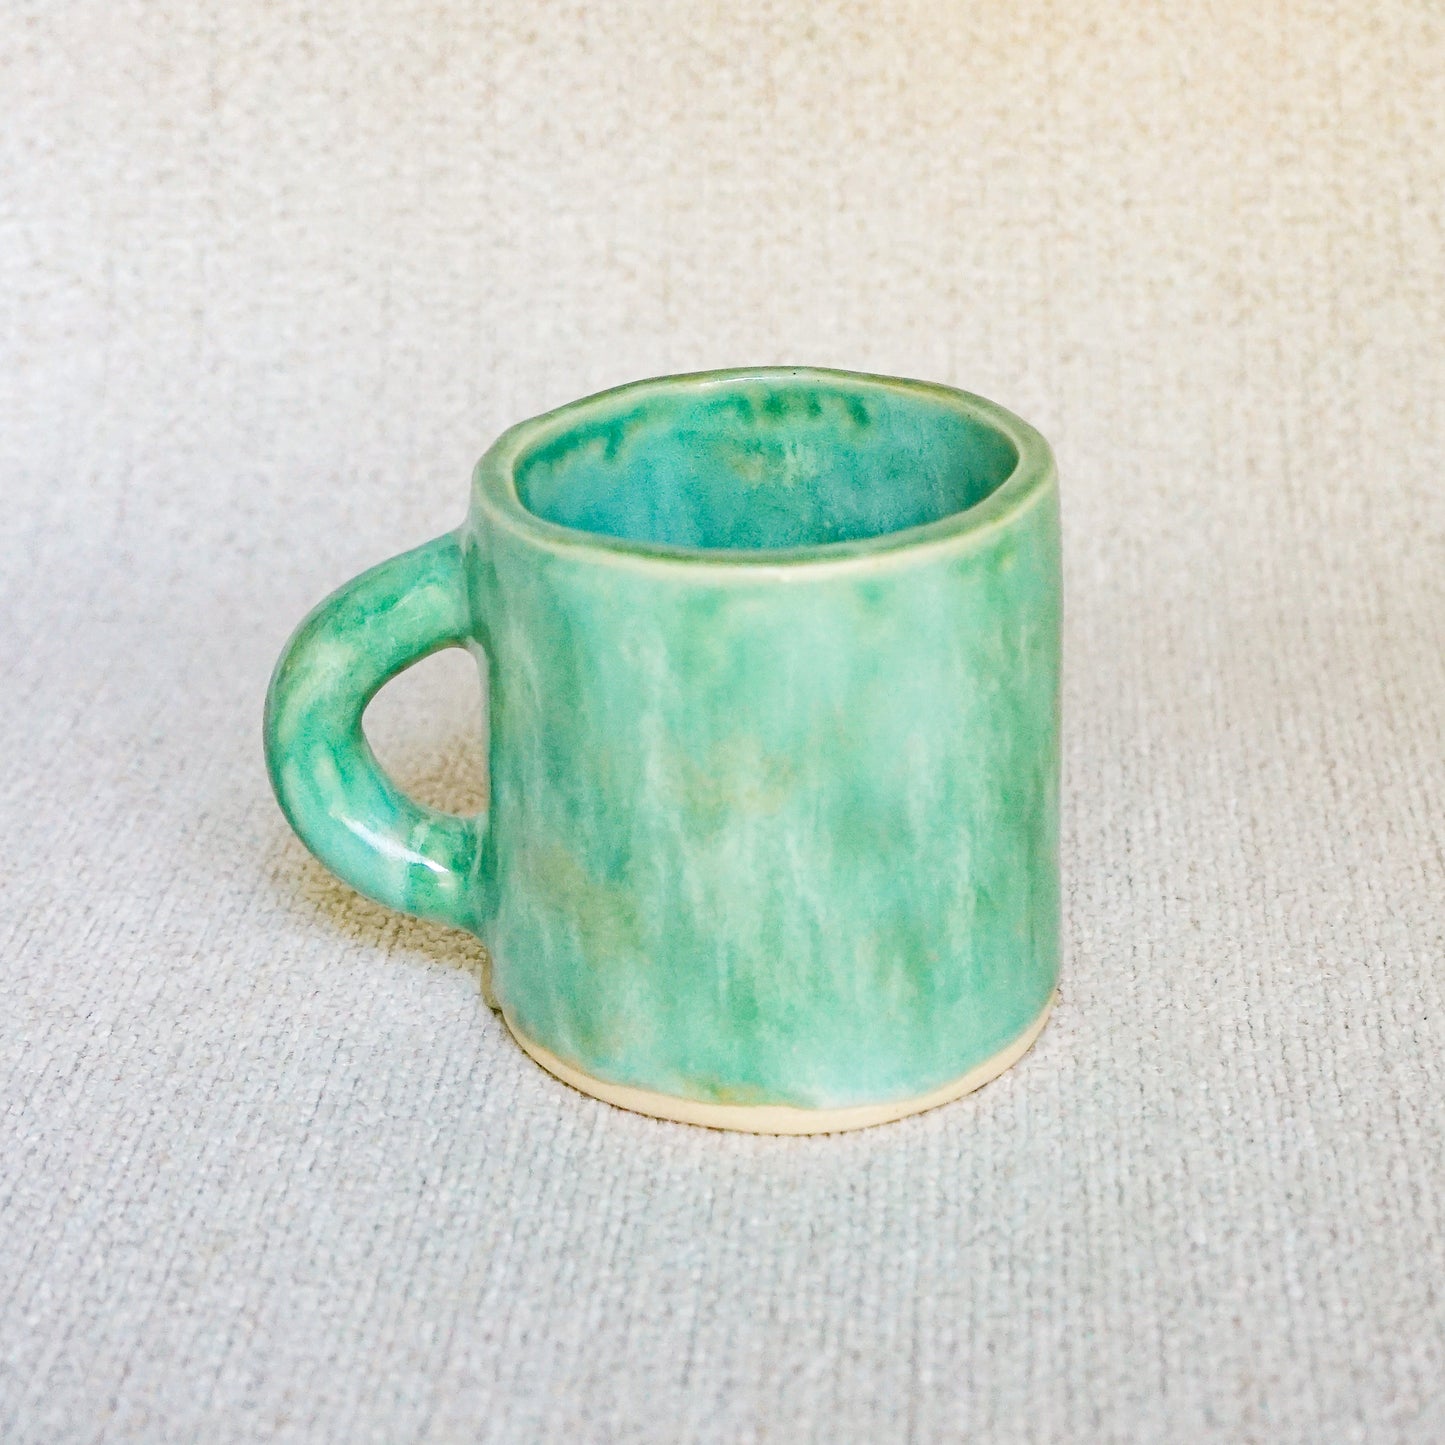 The Jade Mug